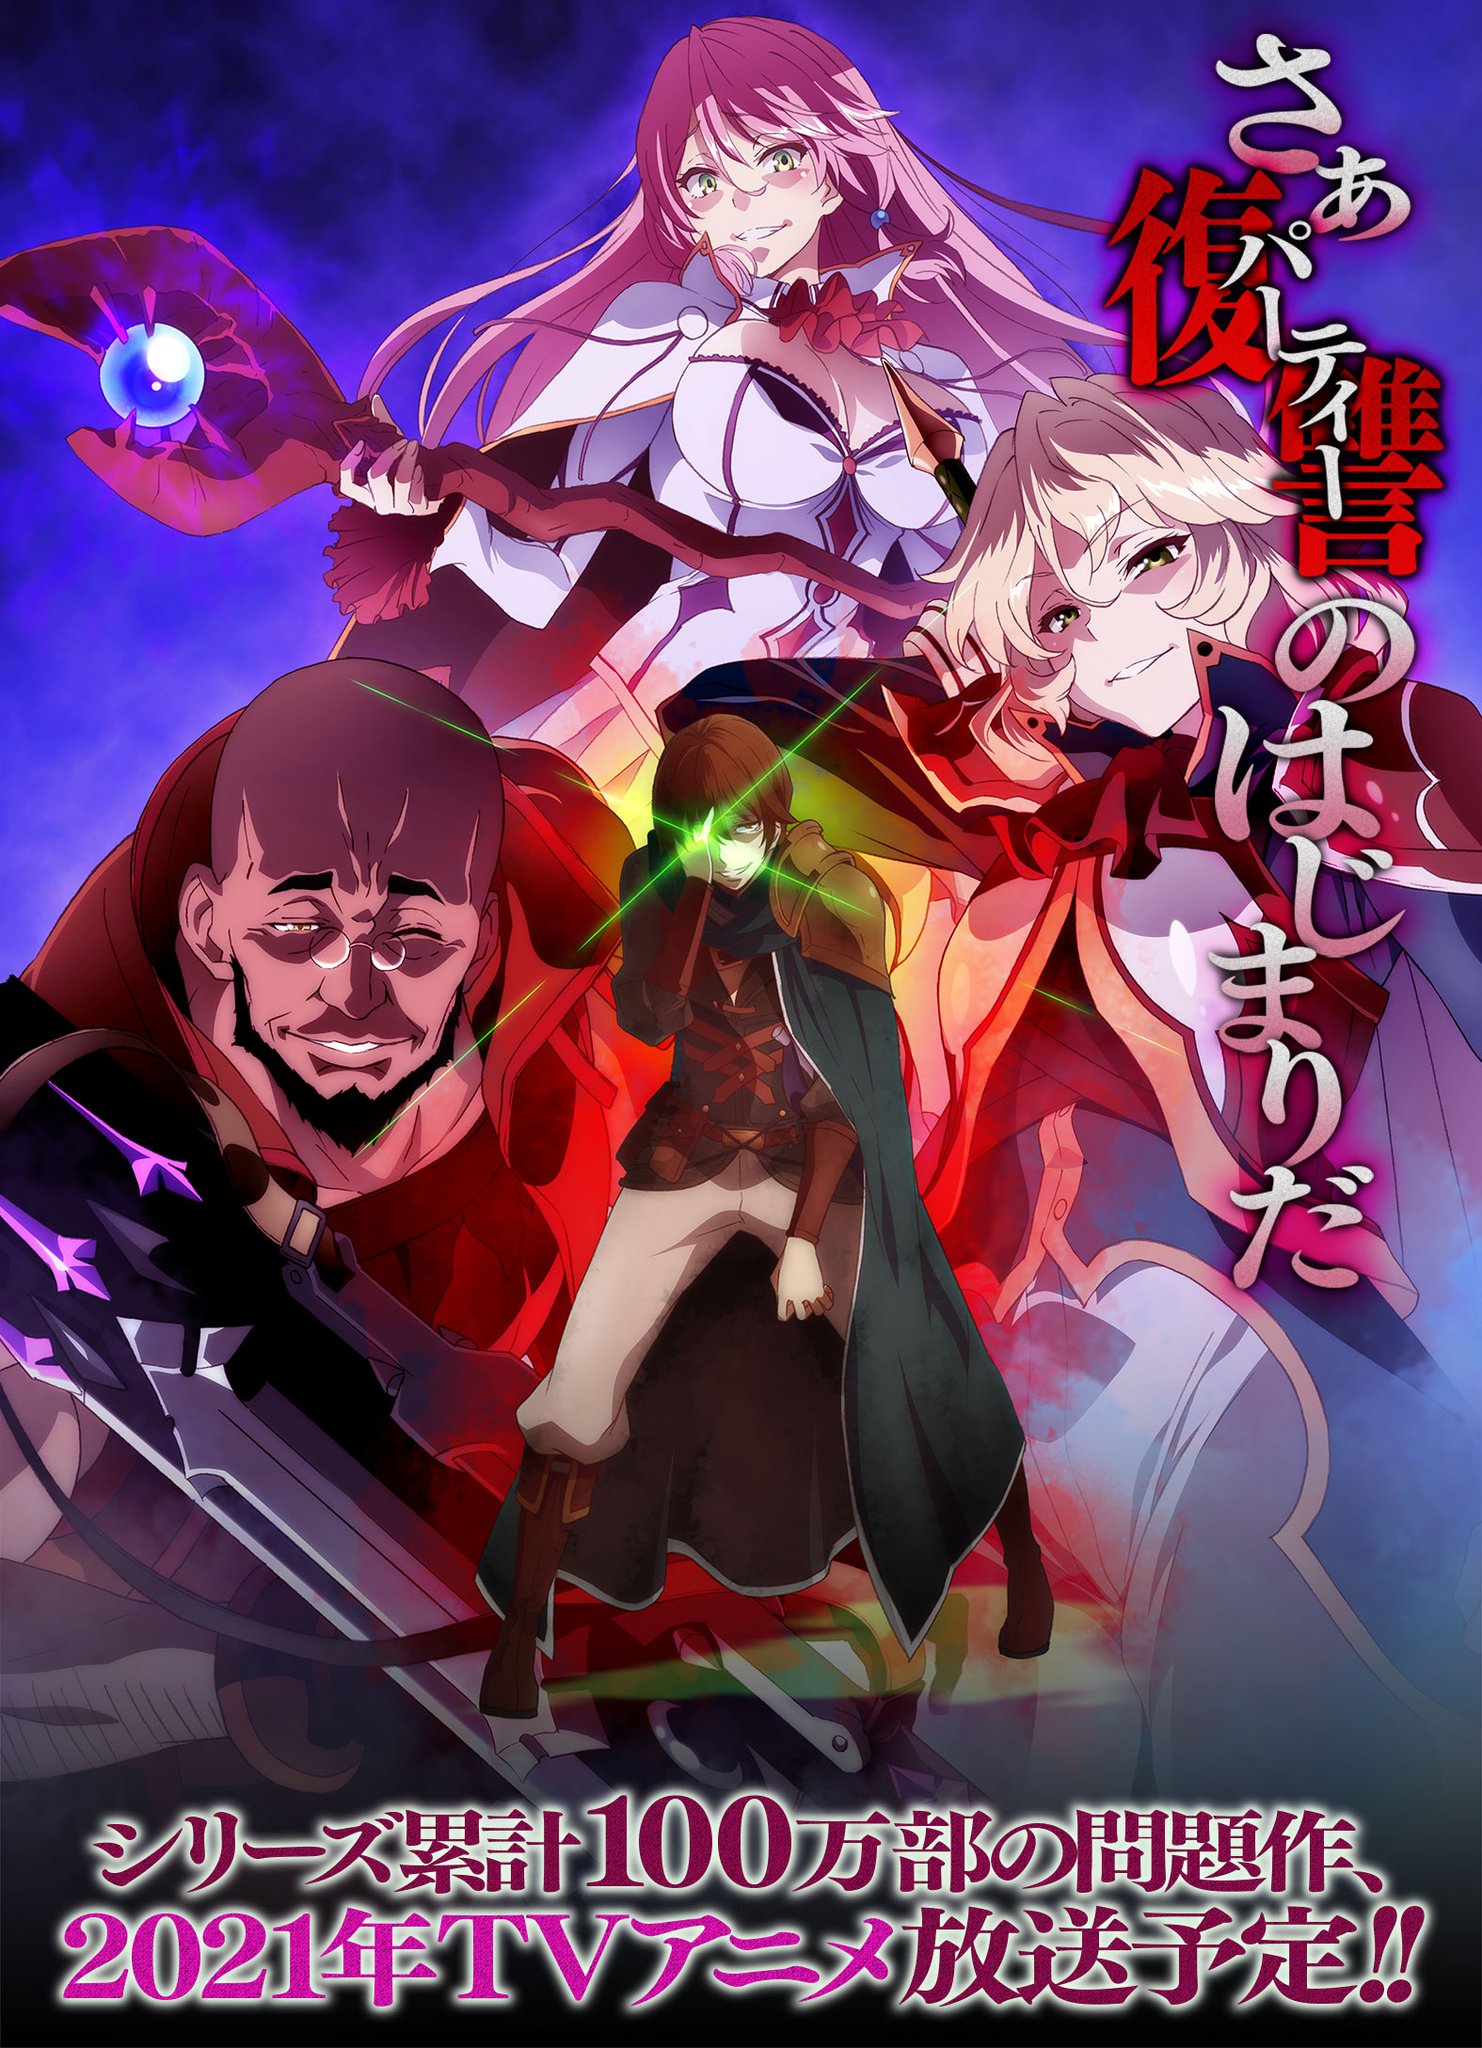 Redo Of Healer Guren - Anime HD Wallpaper